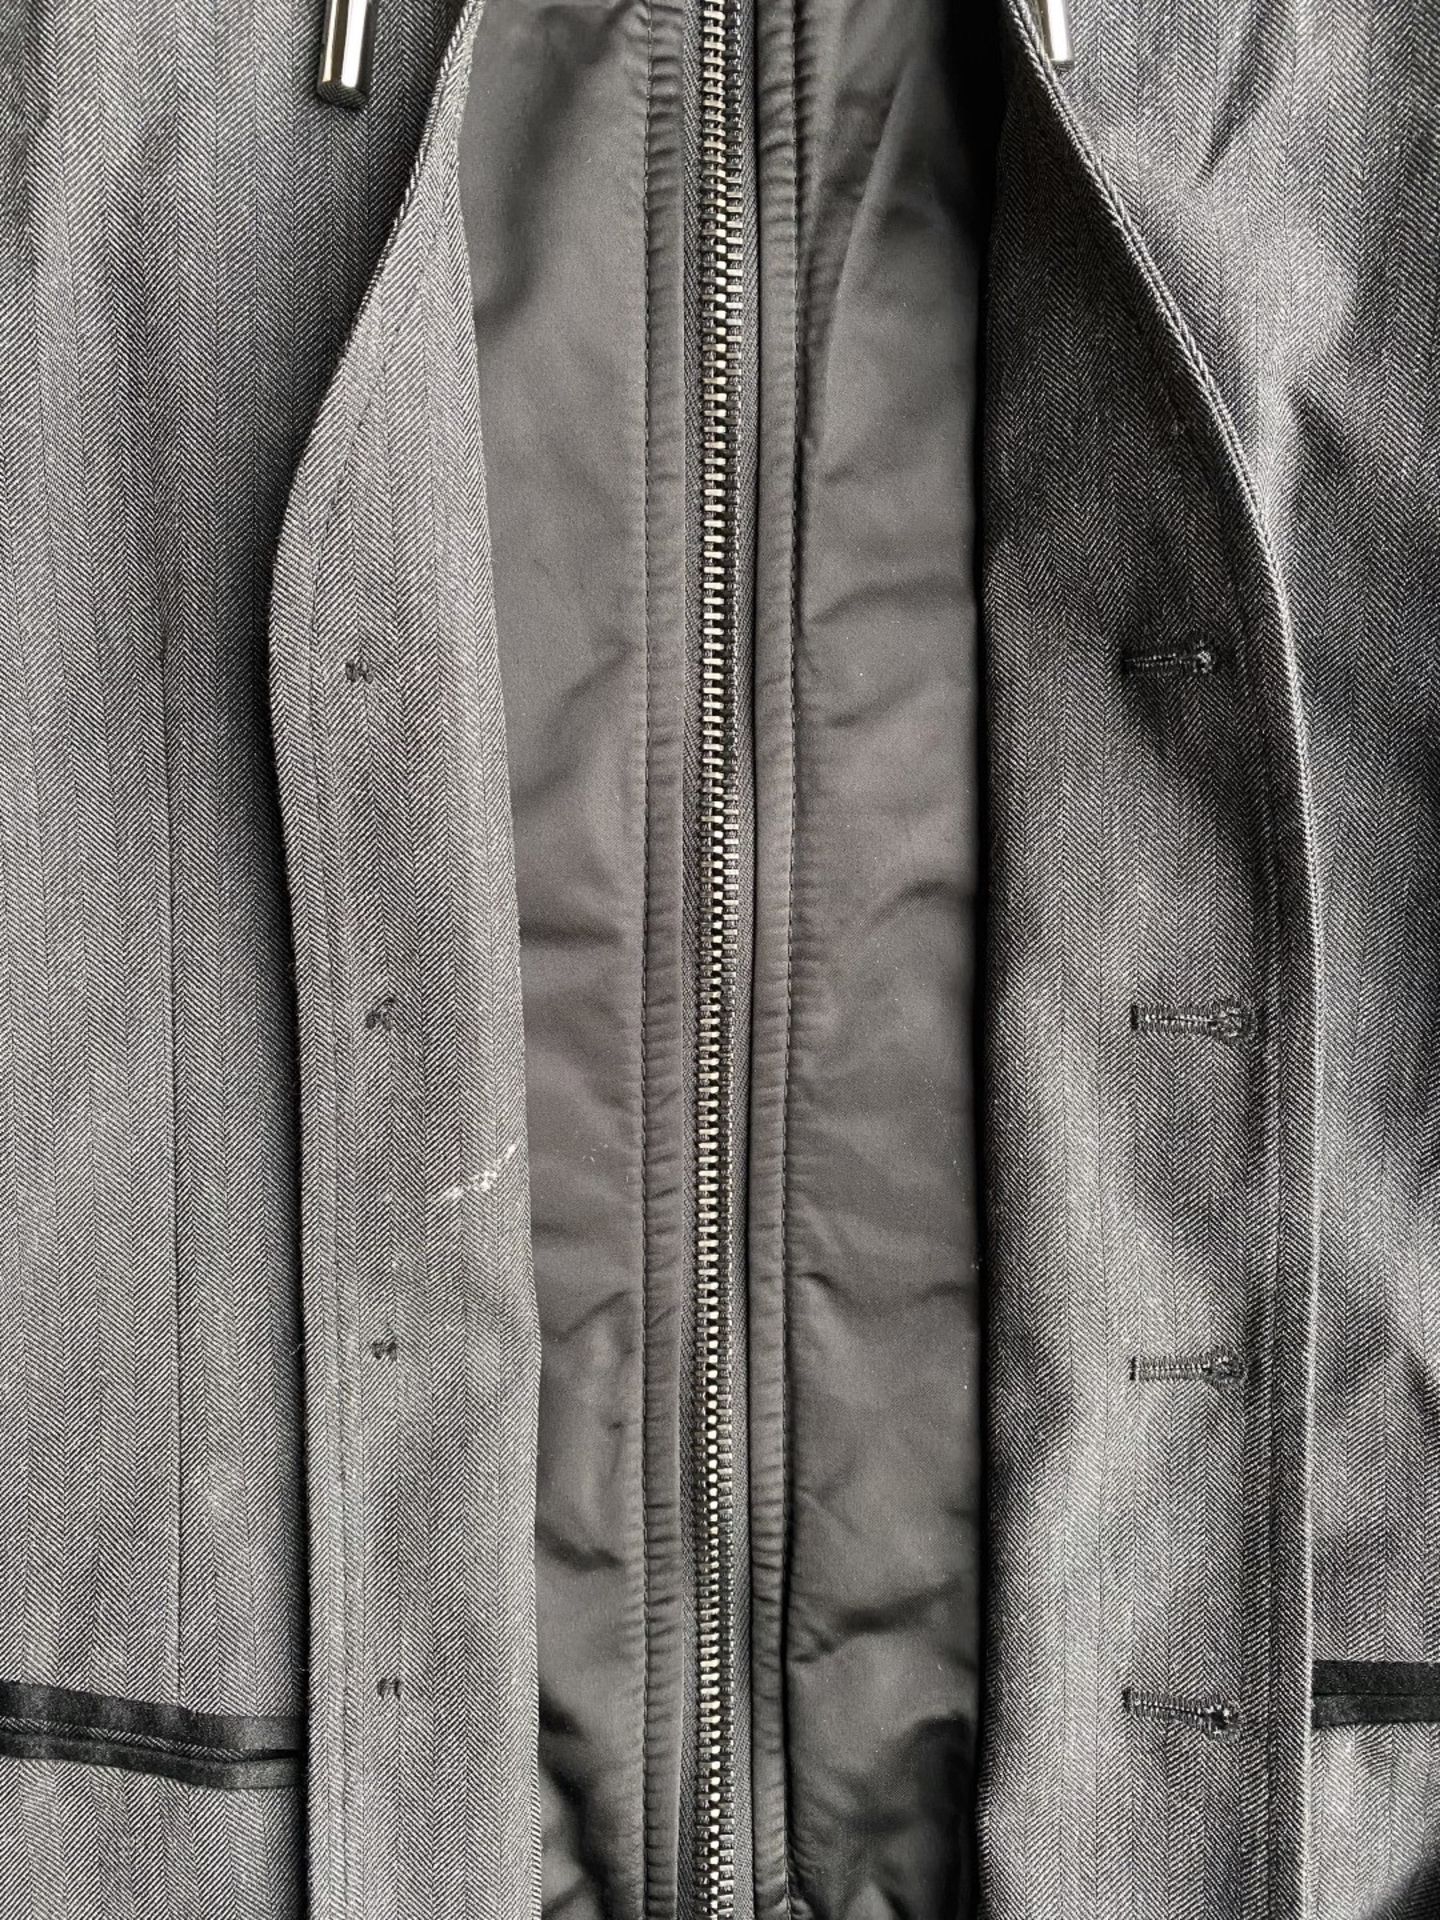 1 x Men's Genuine Dolce & Gabbana Hooded Gilet In Black & Grey - Size: 50 - Image 8 of 9